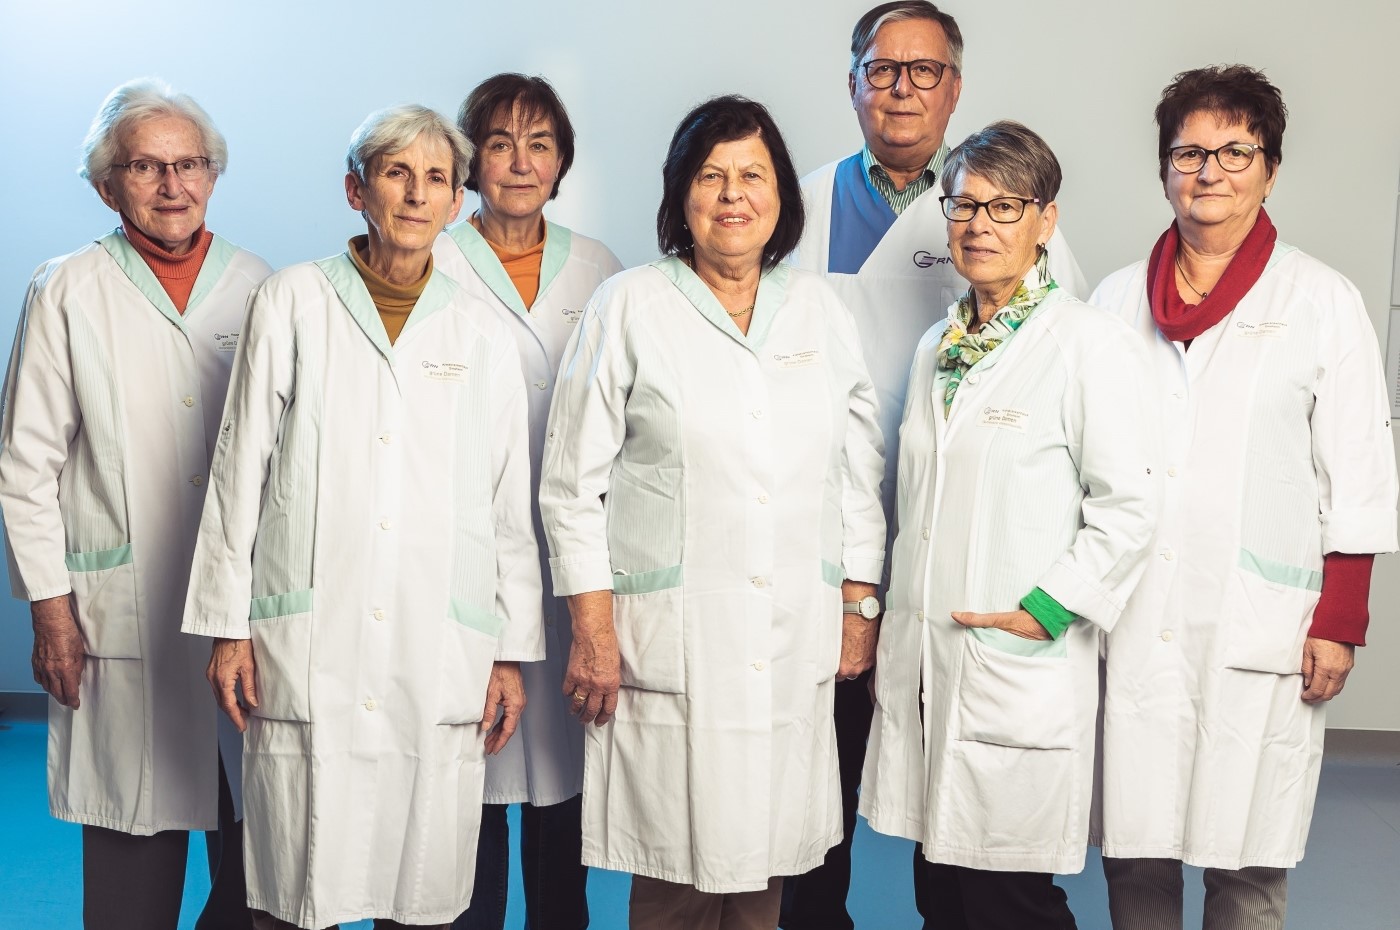 Die "Grünen Damen", bei denen aktuell auch zwei Herren tätig sind, engagieren sich seit Ende 2004 ehrenamtlich in der GRN-Klinik Sinsheim. Foto: GRN